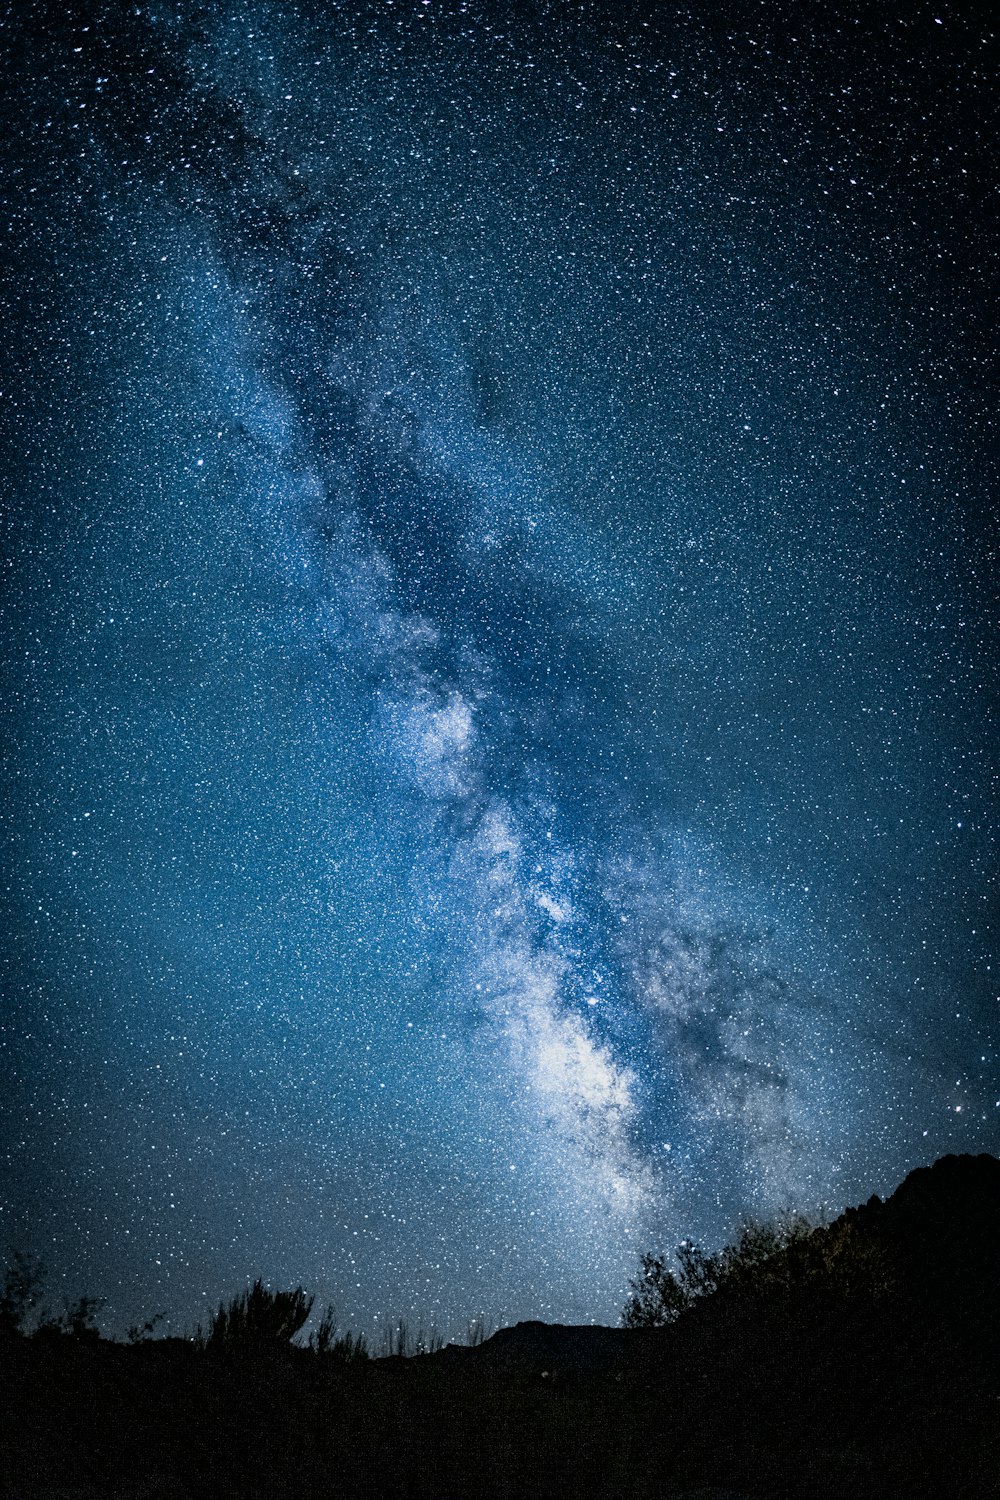 Ein sternenklarer Nachthimmel über einer Bergkette